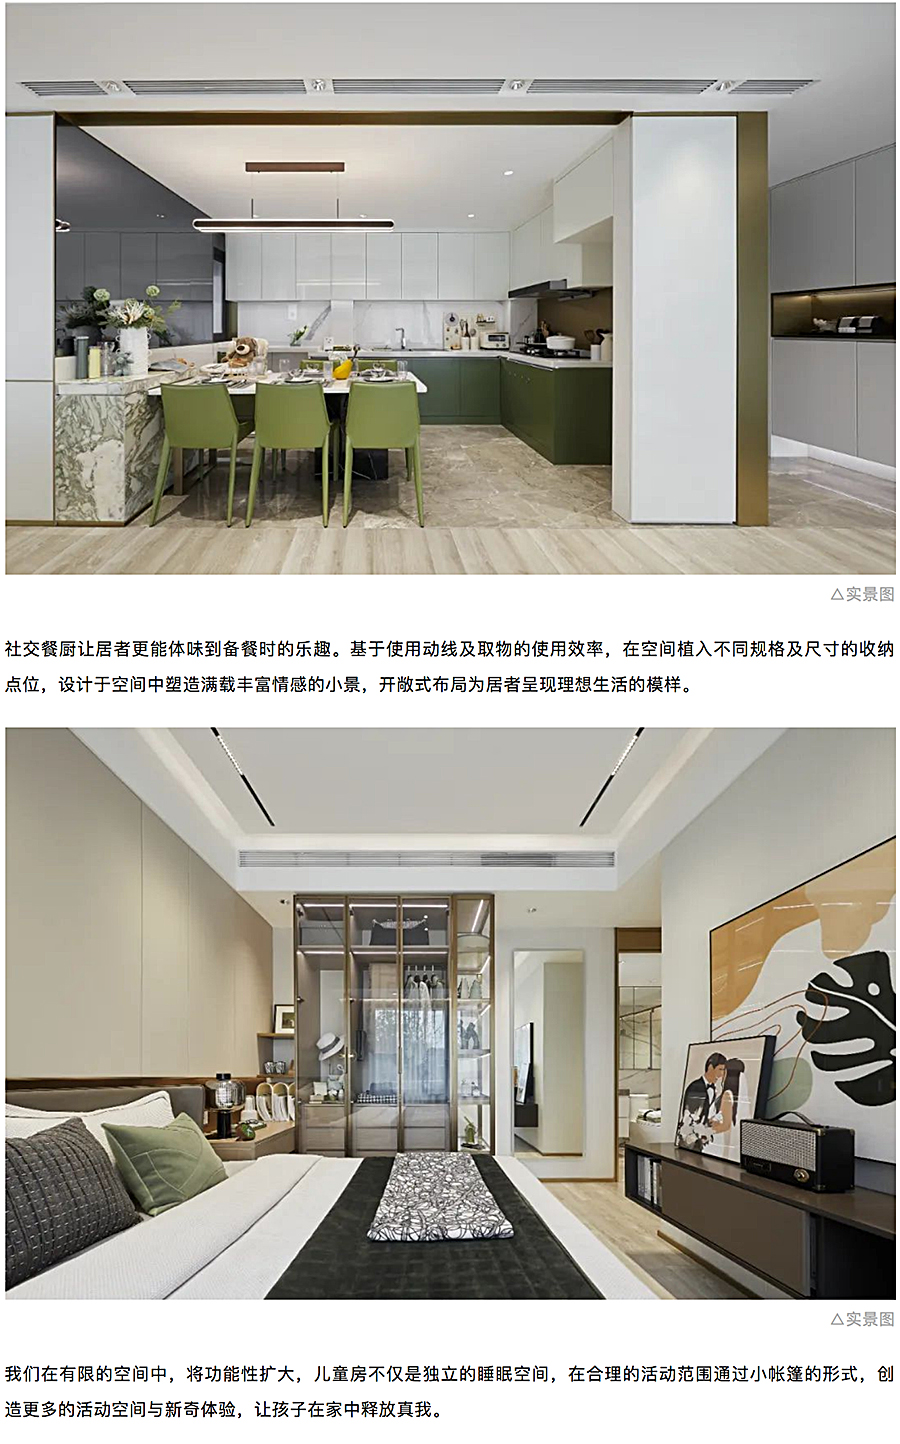 创新洋房社区-引领当代生活-_-重庆东原·月印万川_0022_图层-23.jpg